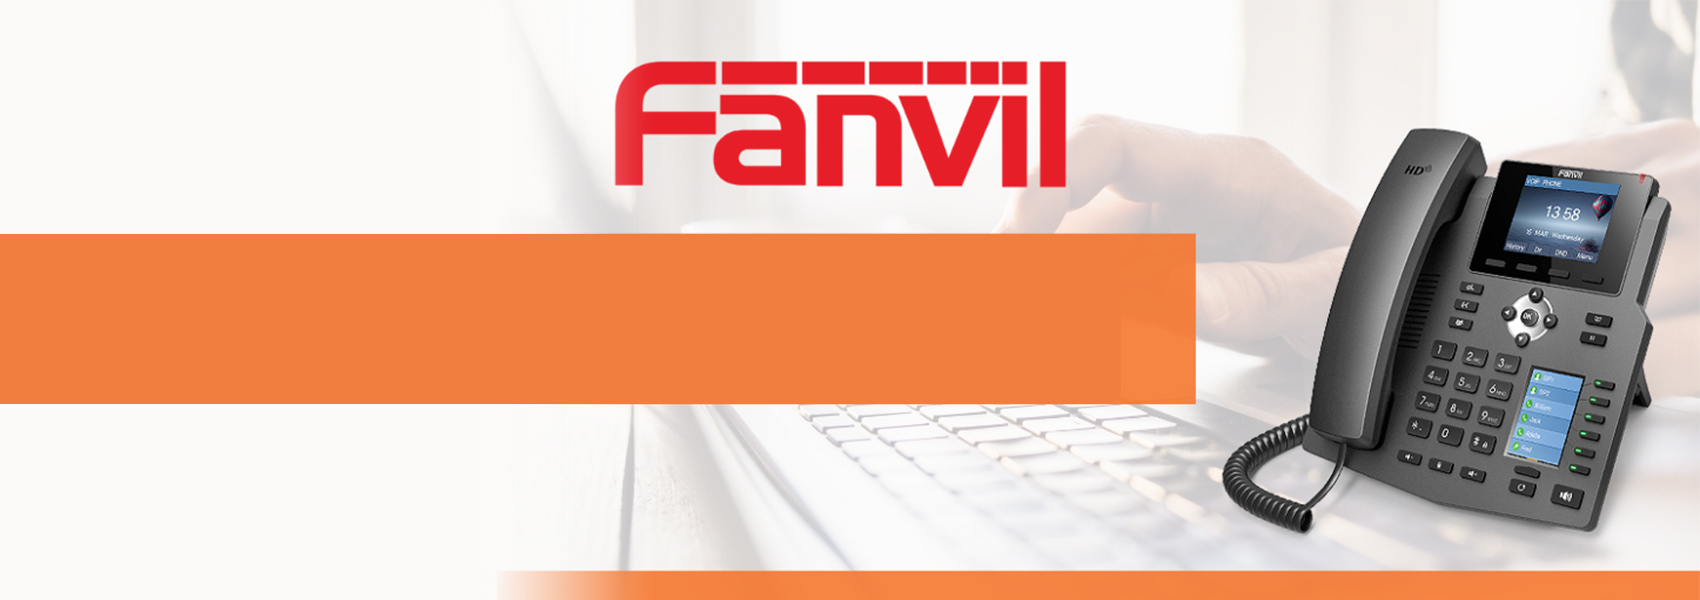 Fanvil - X4